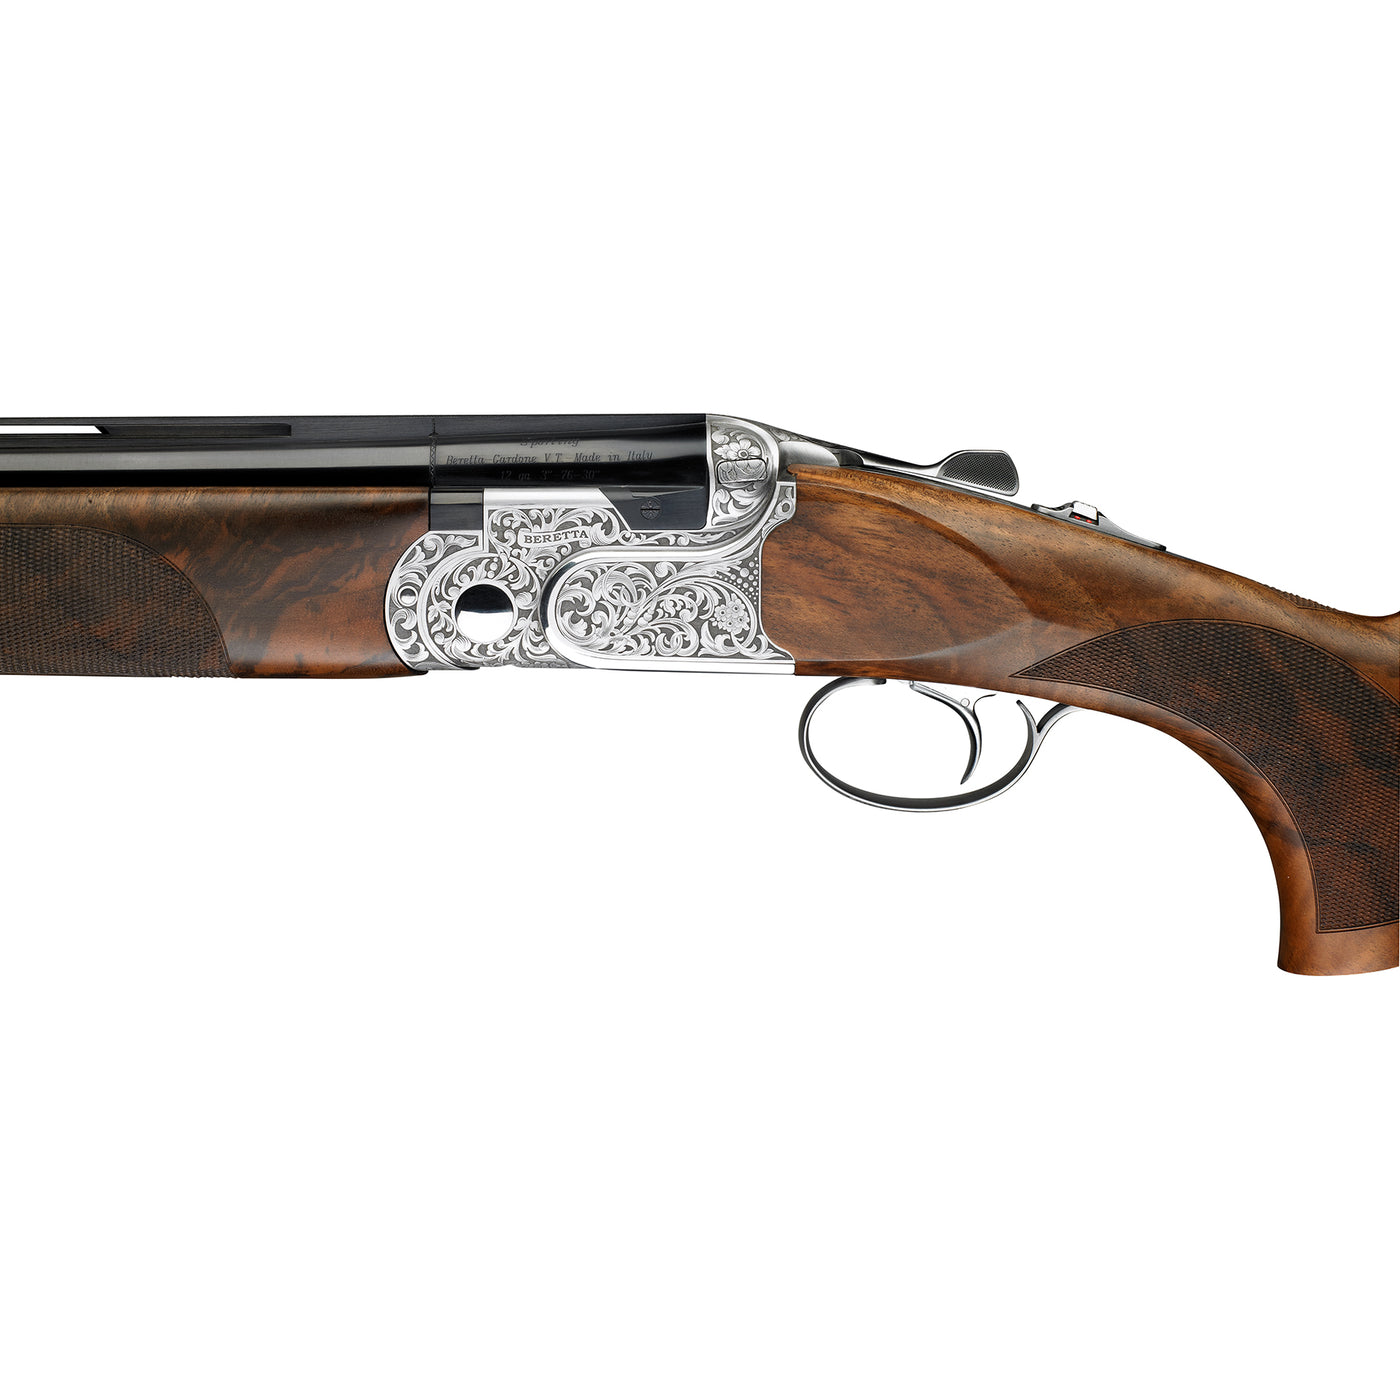 Beretta dt11 l shotgun for hunting